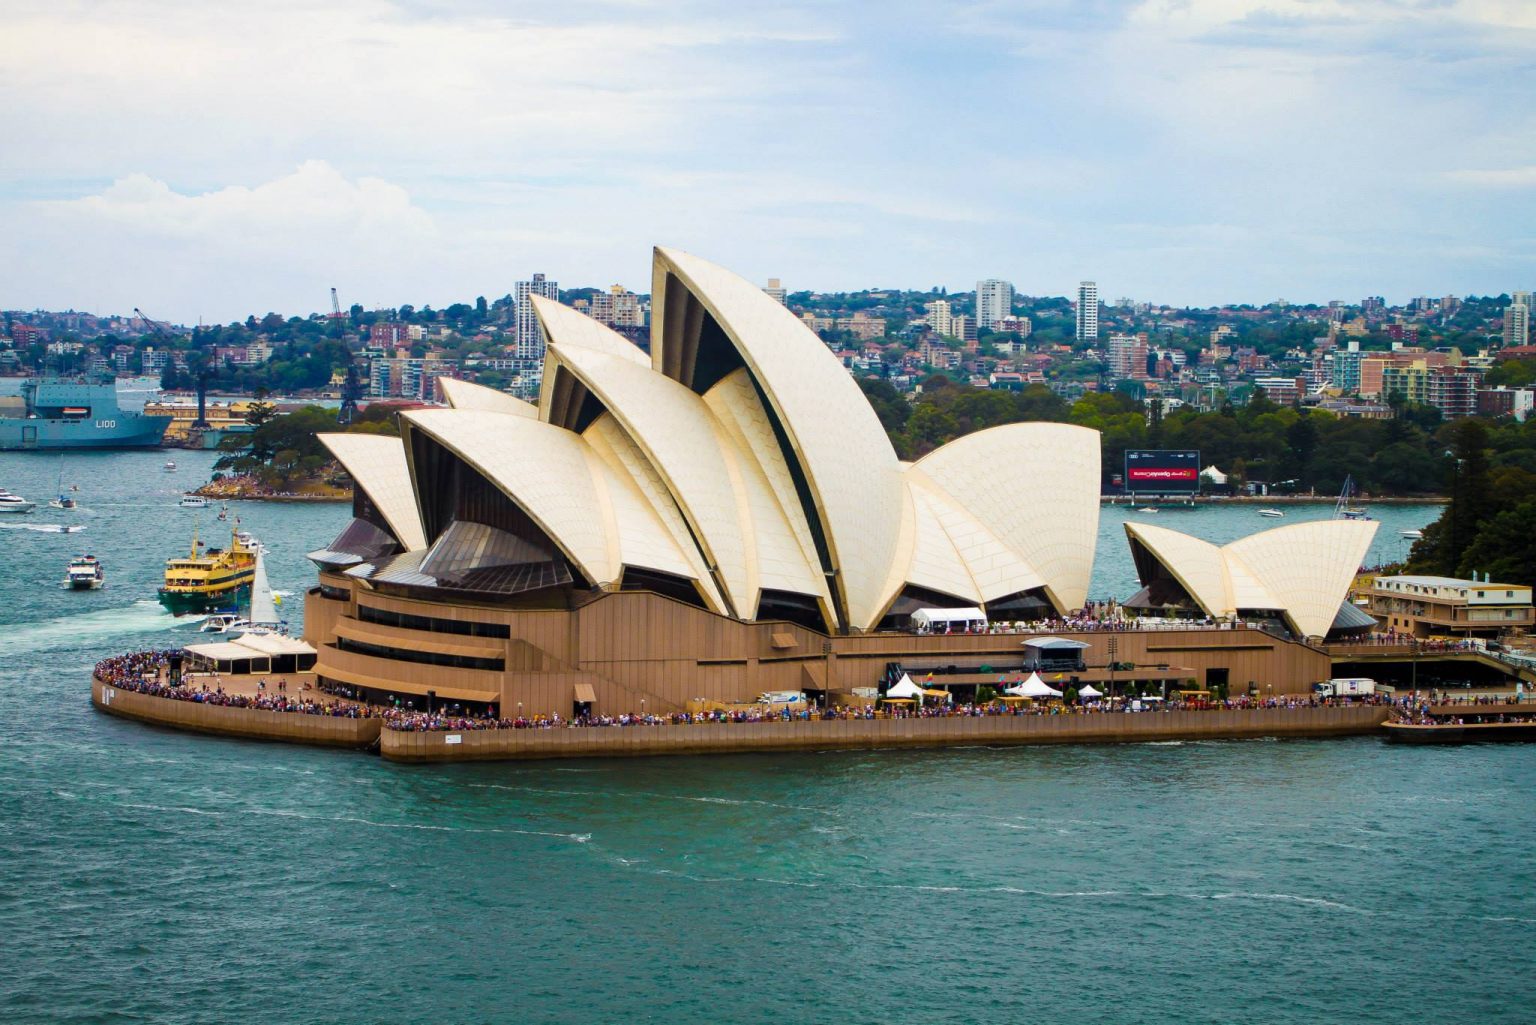 australian heritage tours